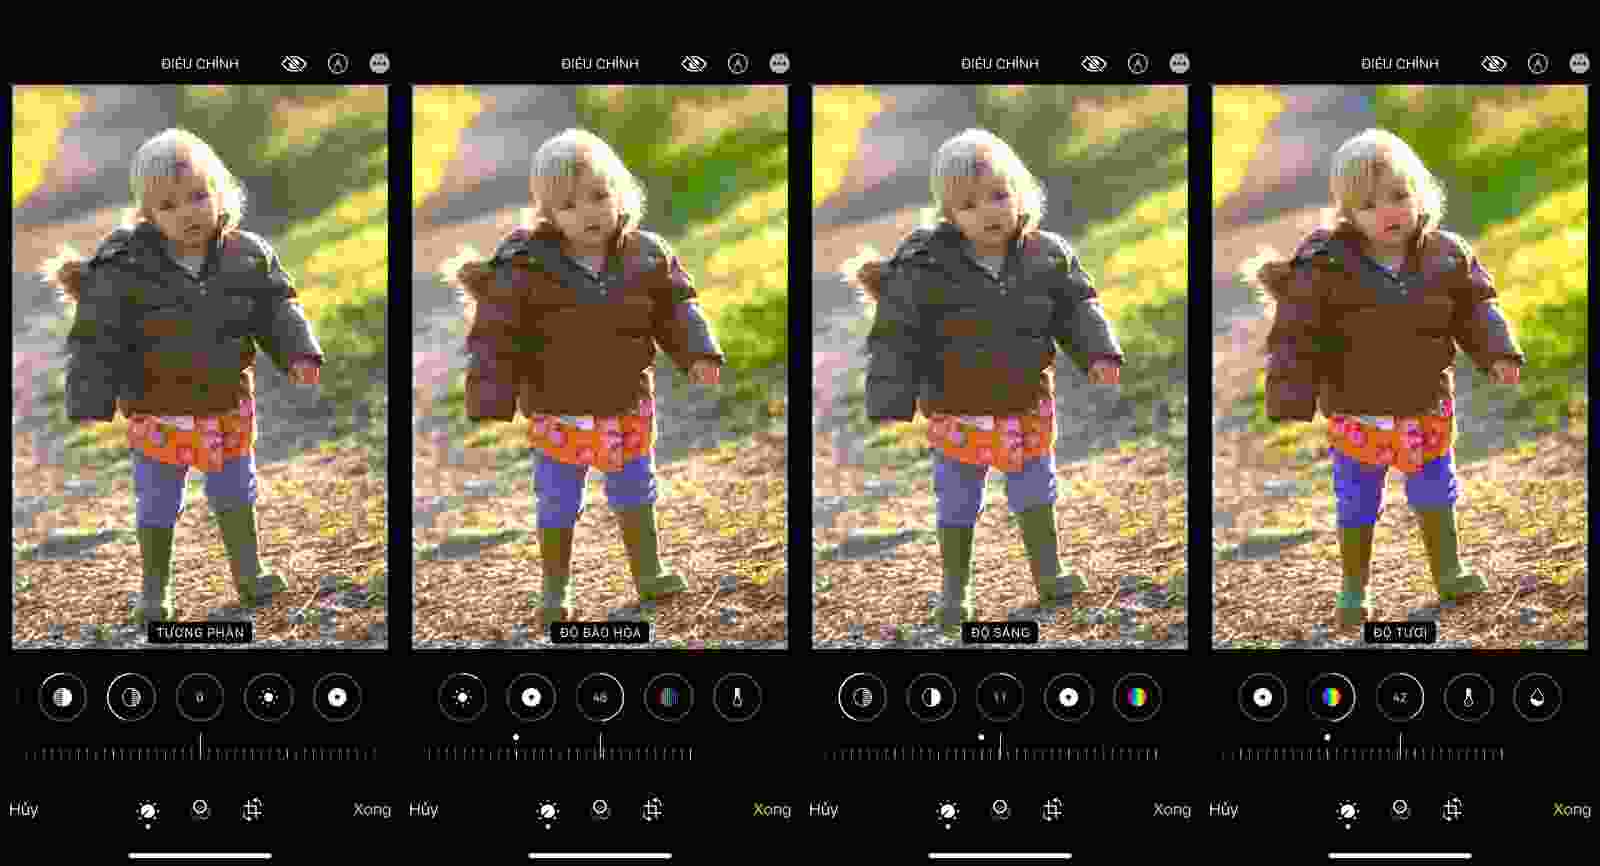 Chỉnh màu trên iPhone là việc rất đơn giản và dễ dàng để biến những bức ảnh của bạn trở nên thú vị hơn. Bạn có thể sử dụng các tính năng chỉnh sửa của iPhone để tạo ra những bức ảnh độc đáo và chuyên nghiệp chỉ trong vài giây.